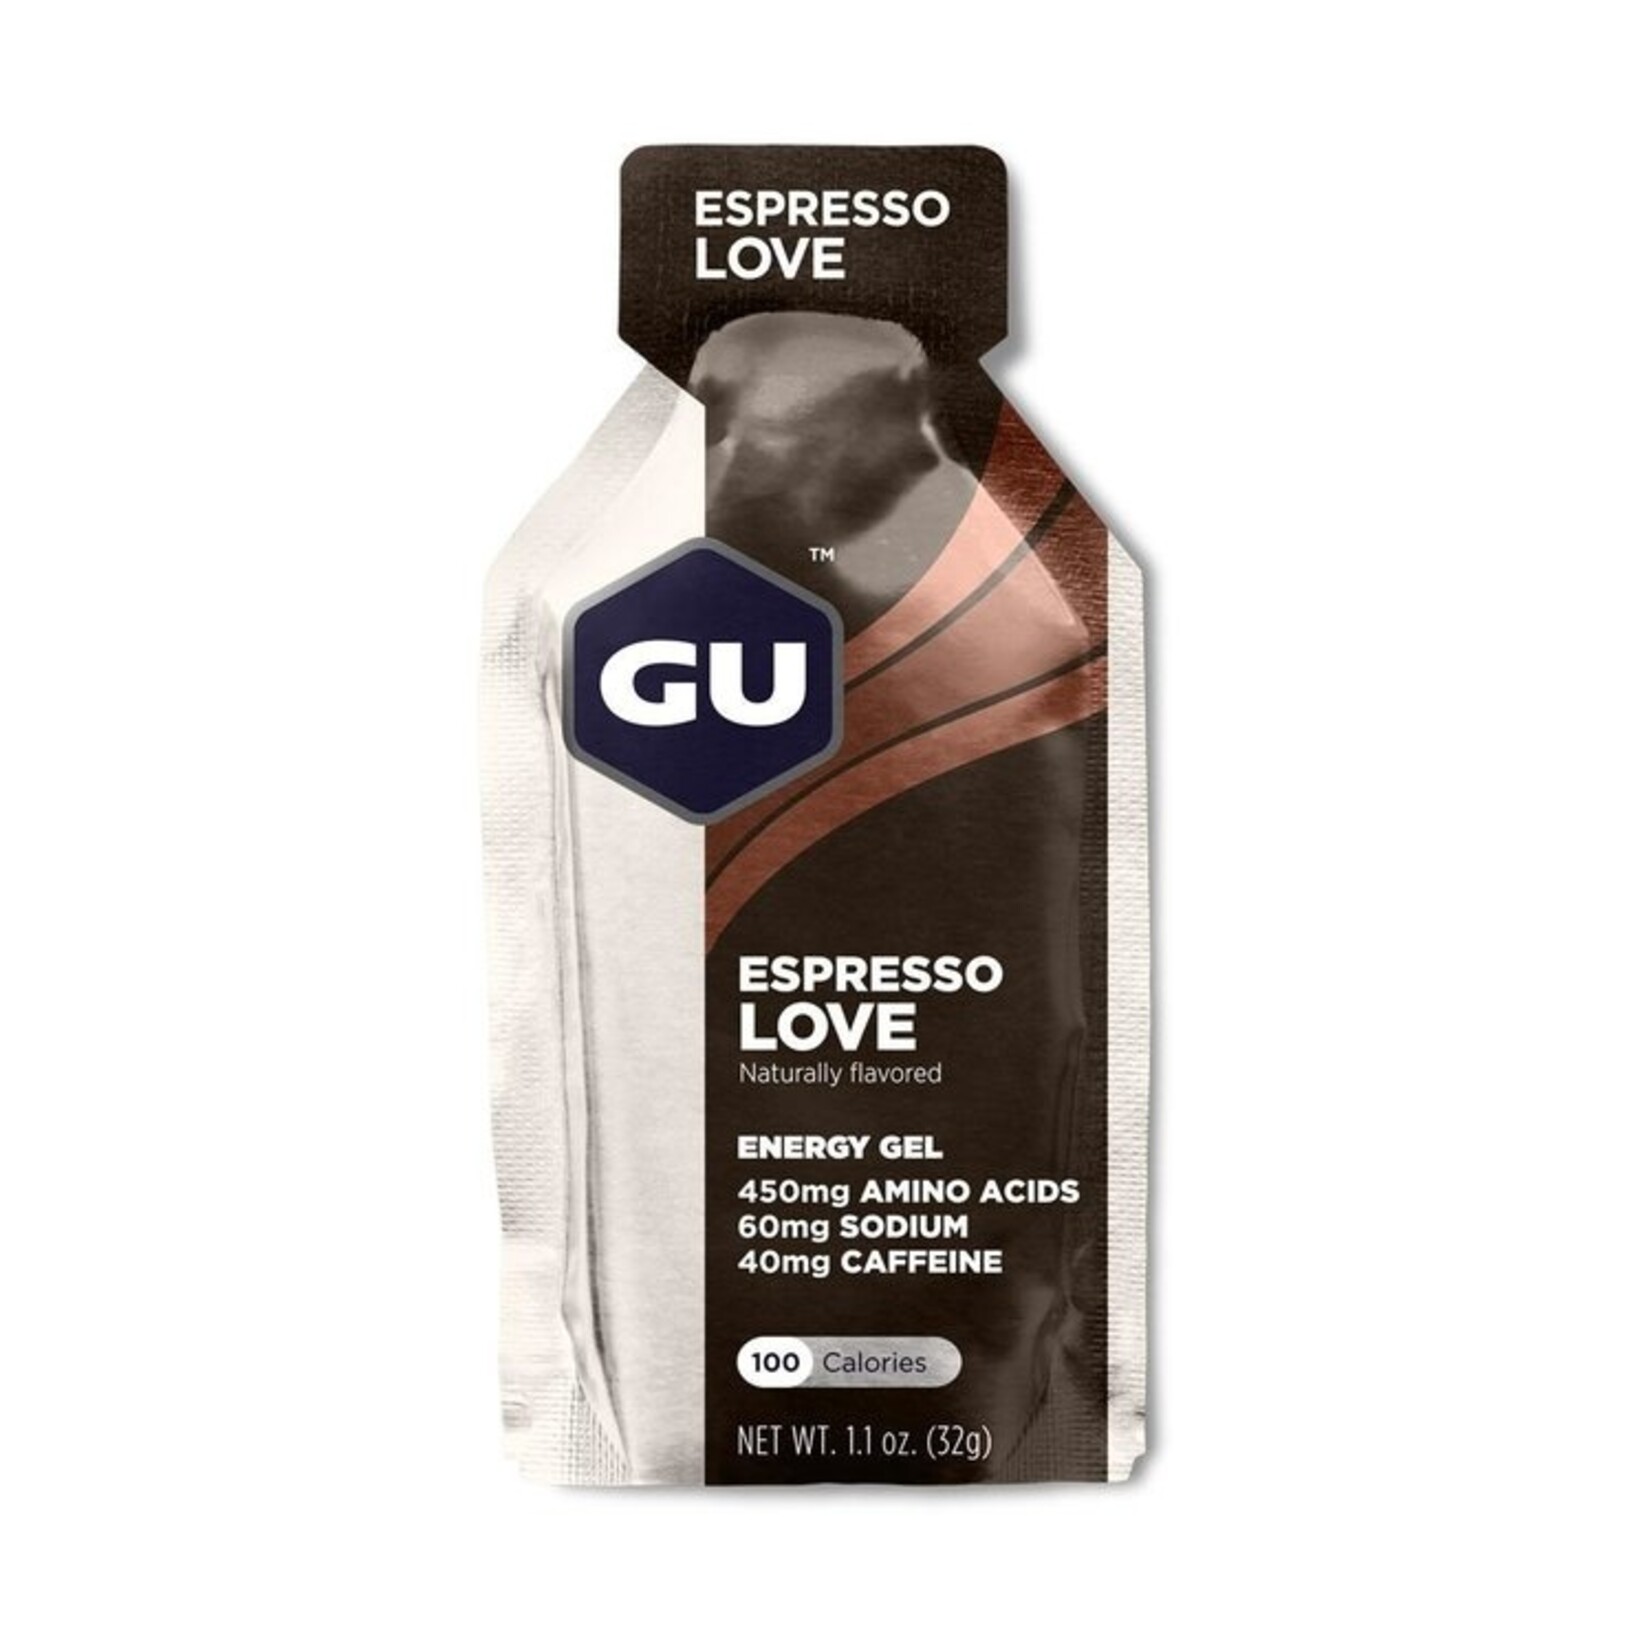 GU GU Energy Gel - Espresso Love single